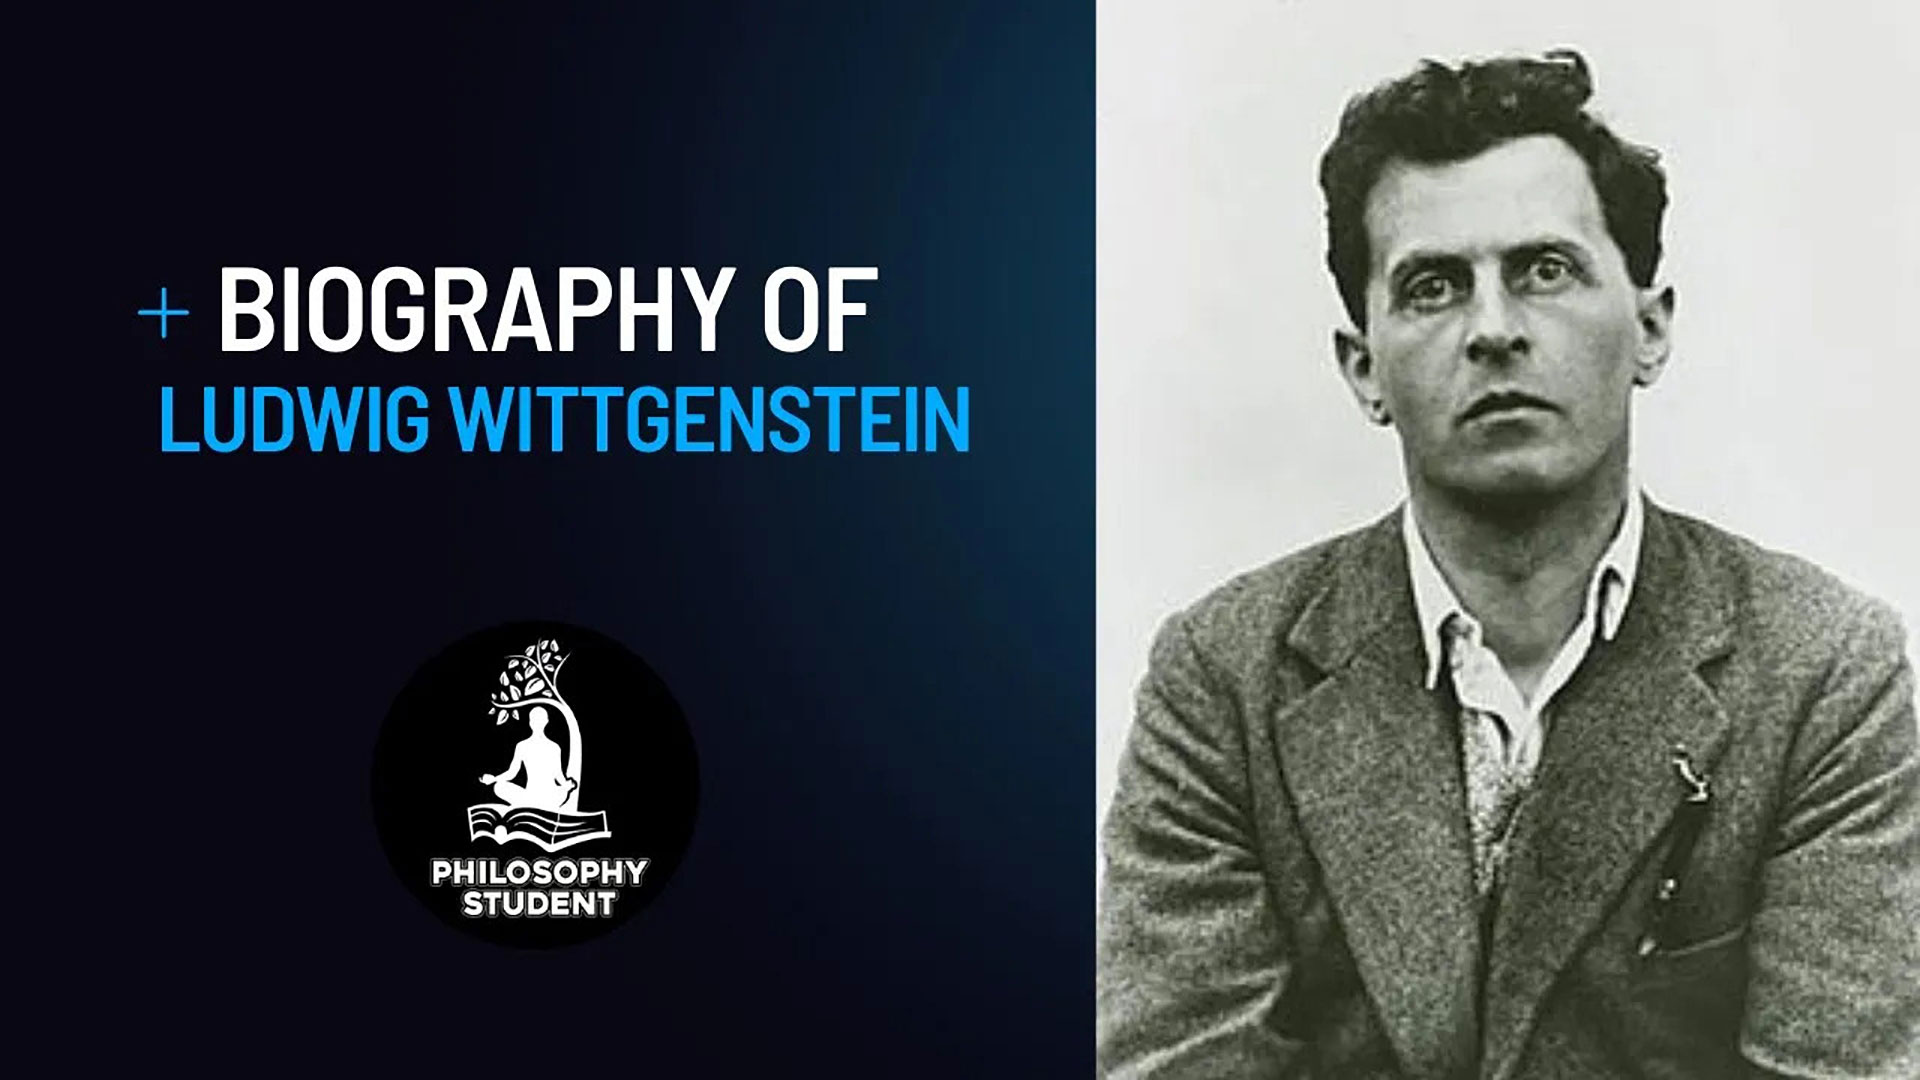 Wittgenstein, Ludwig